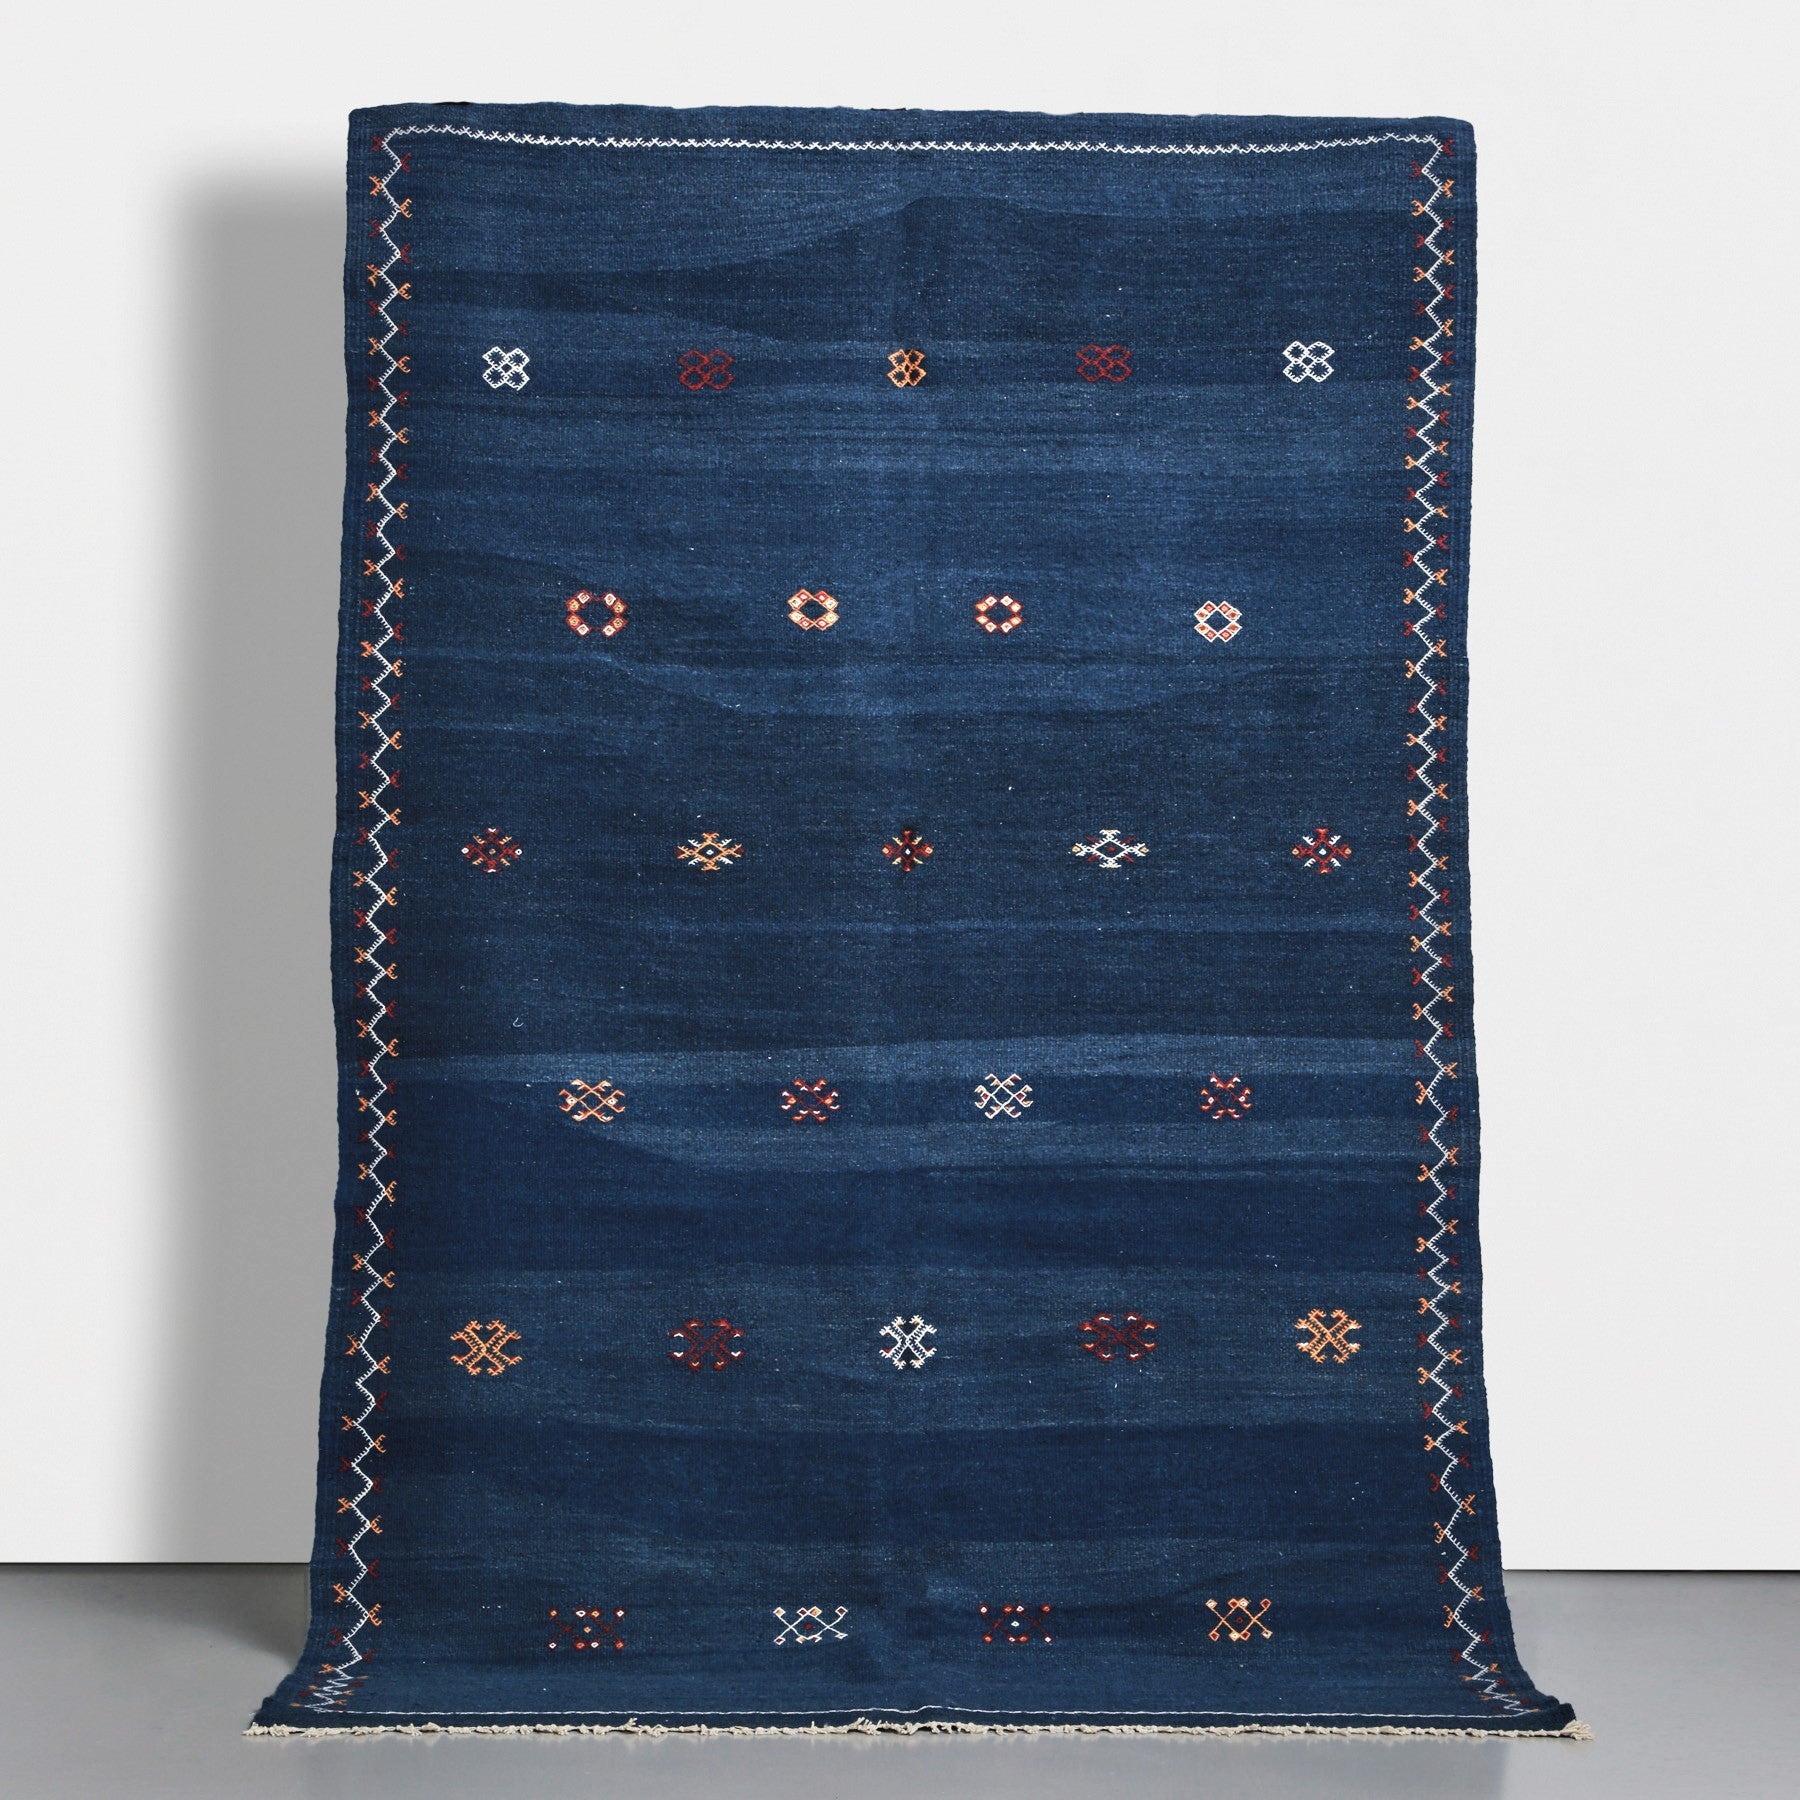 Tappeto marocchino akhnif a tessitura piatta realizzato a mano tessendo lana di varie sfumature di blu e ricamando simboli tradizionali amazigh in vari colori